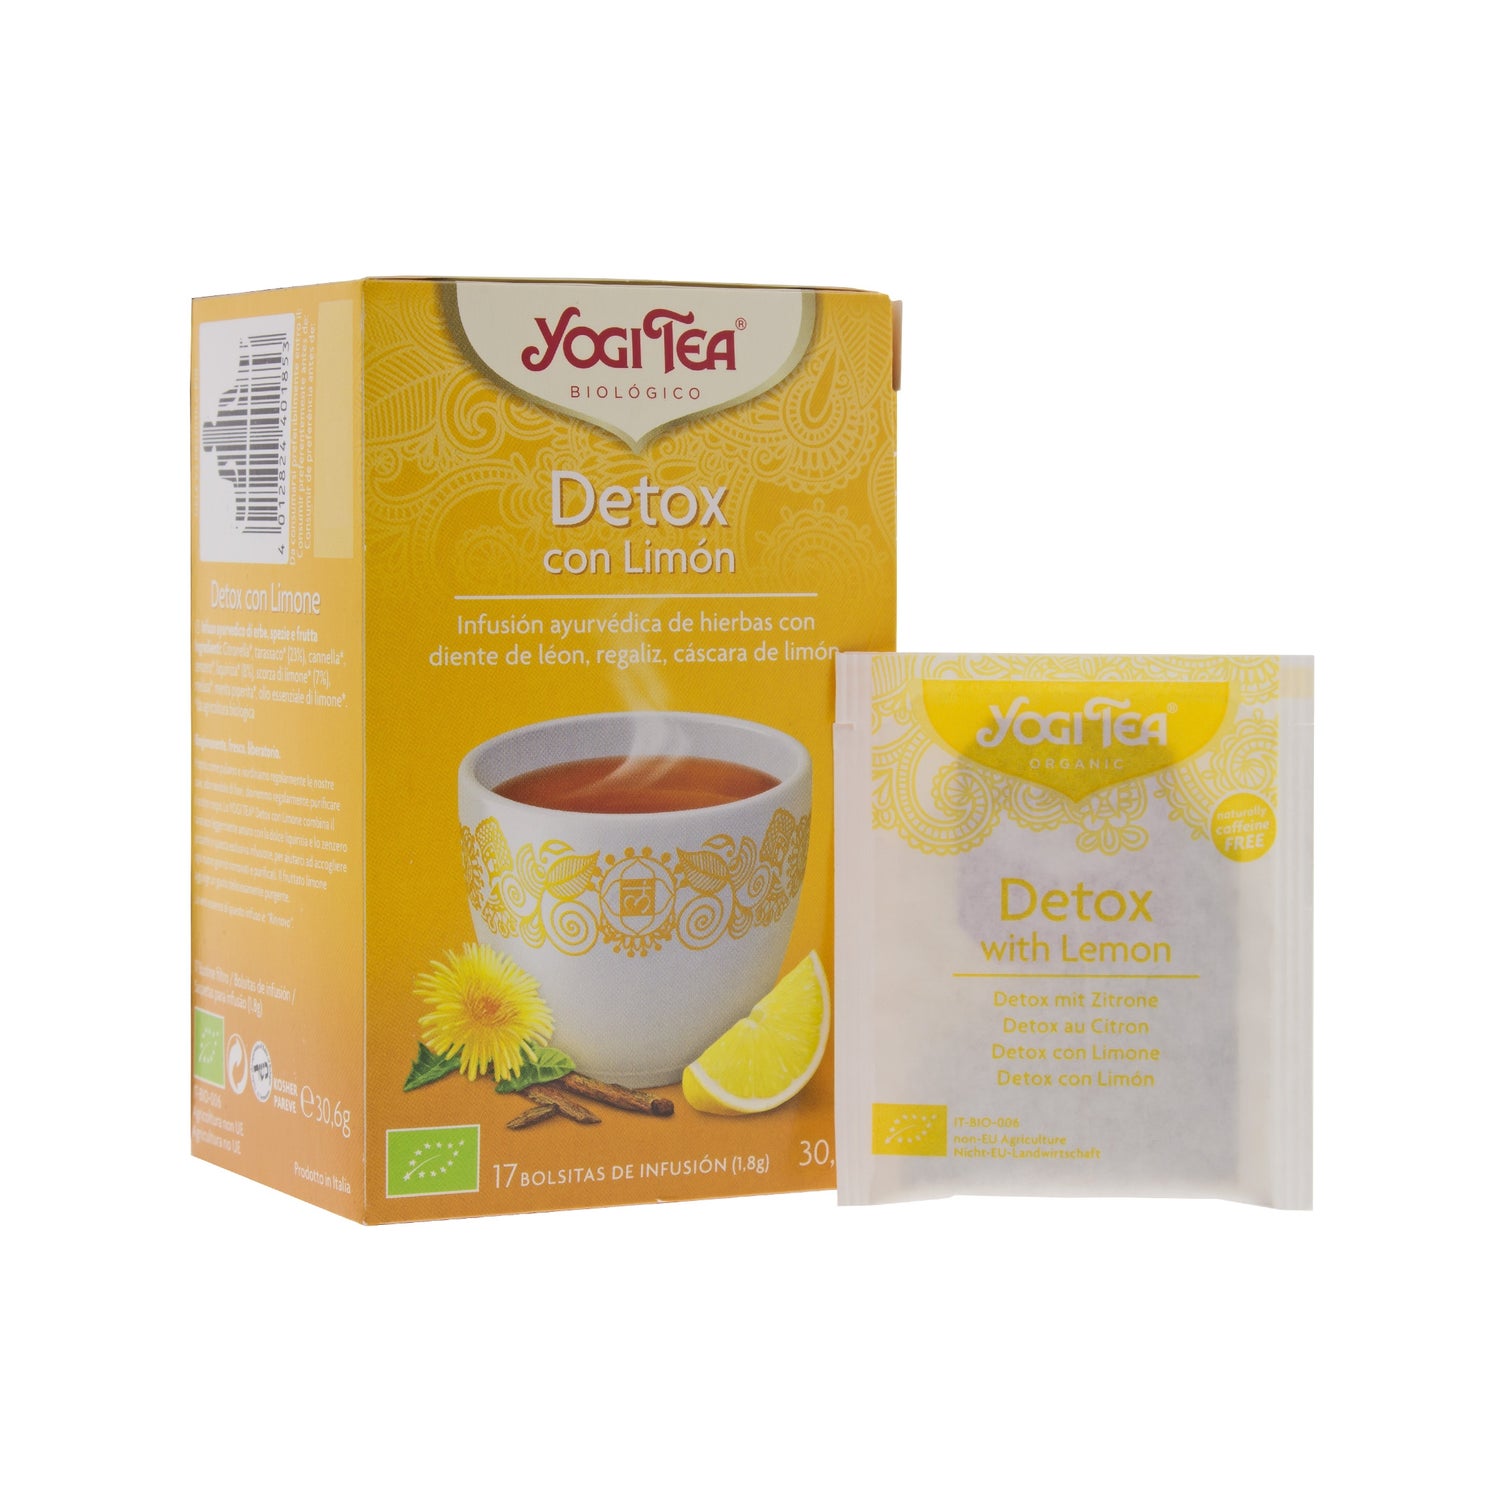 Yogi Tea Detox Citron Bio Infusette 2g 17